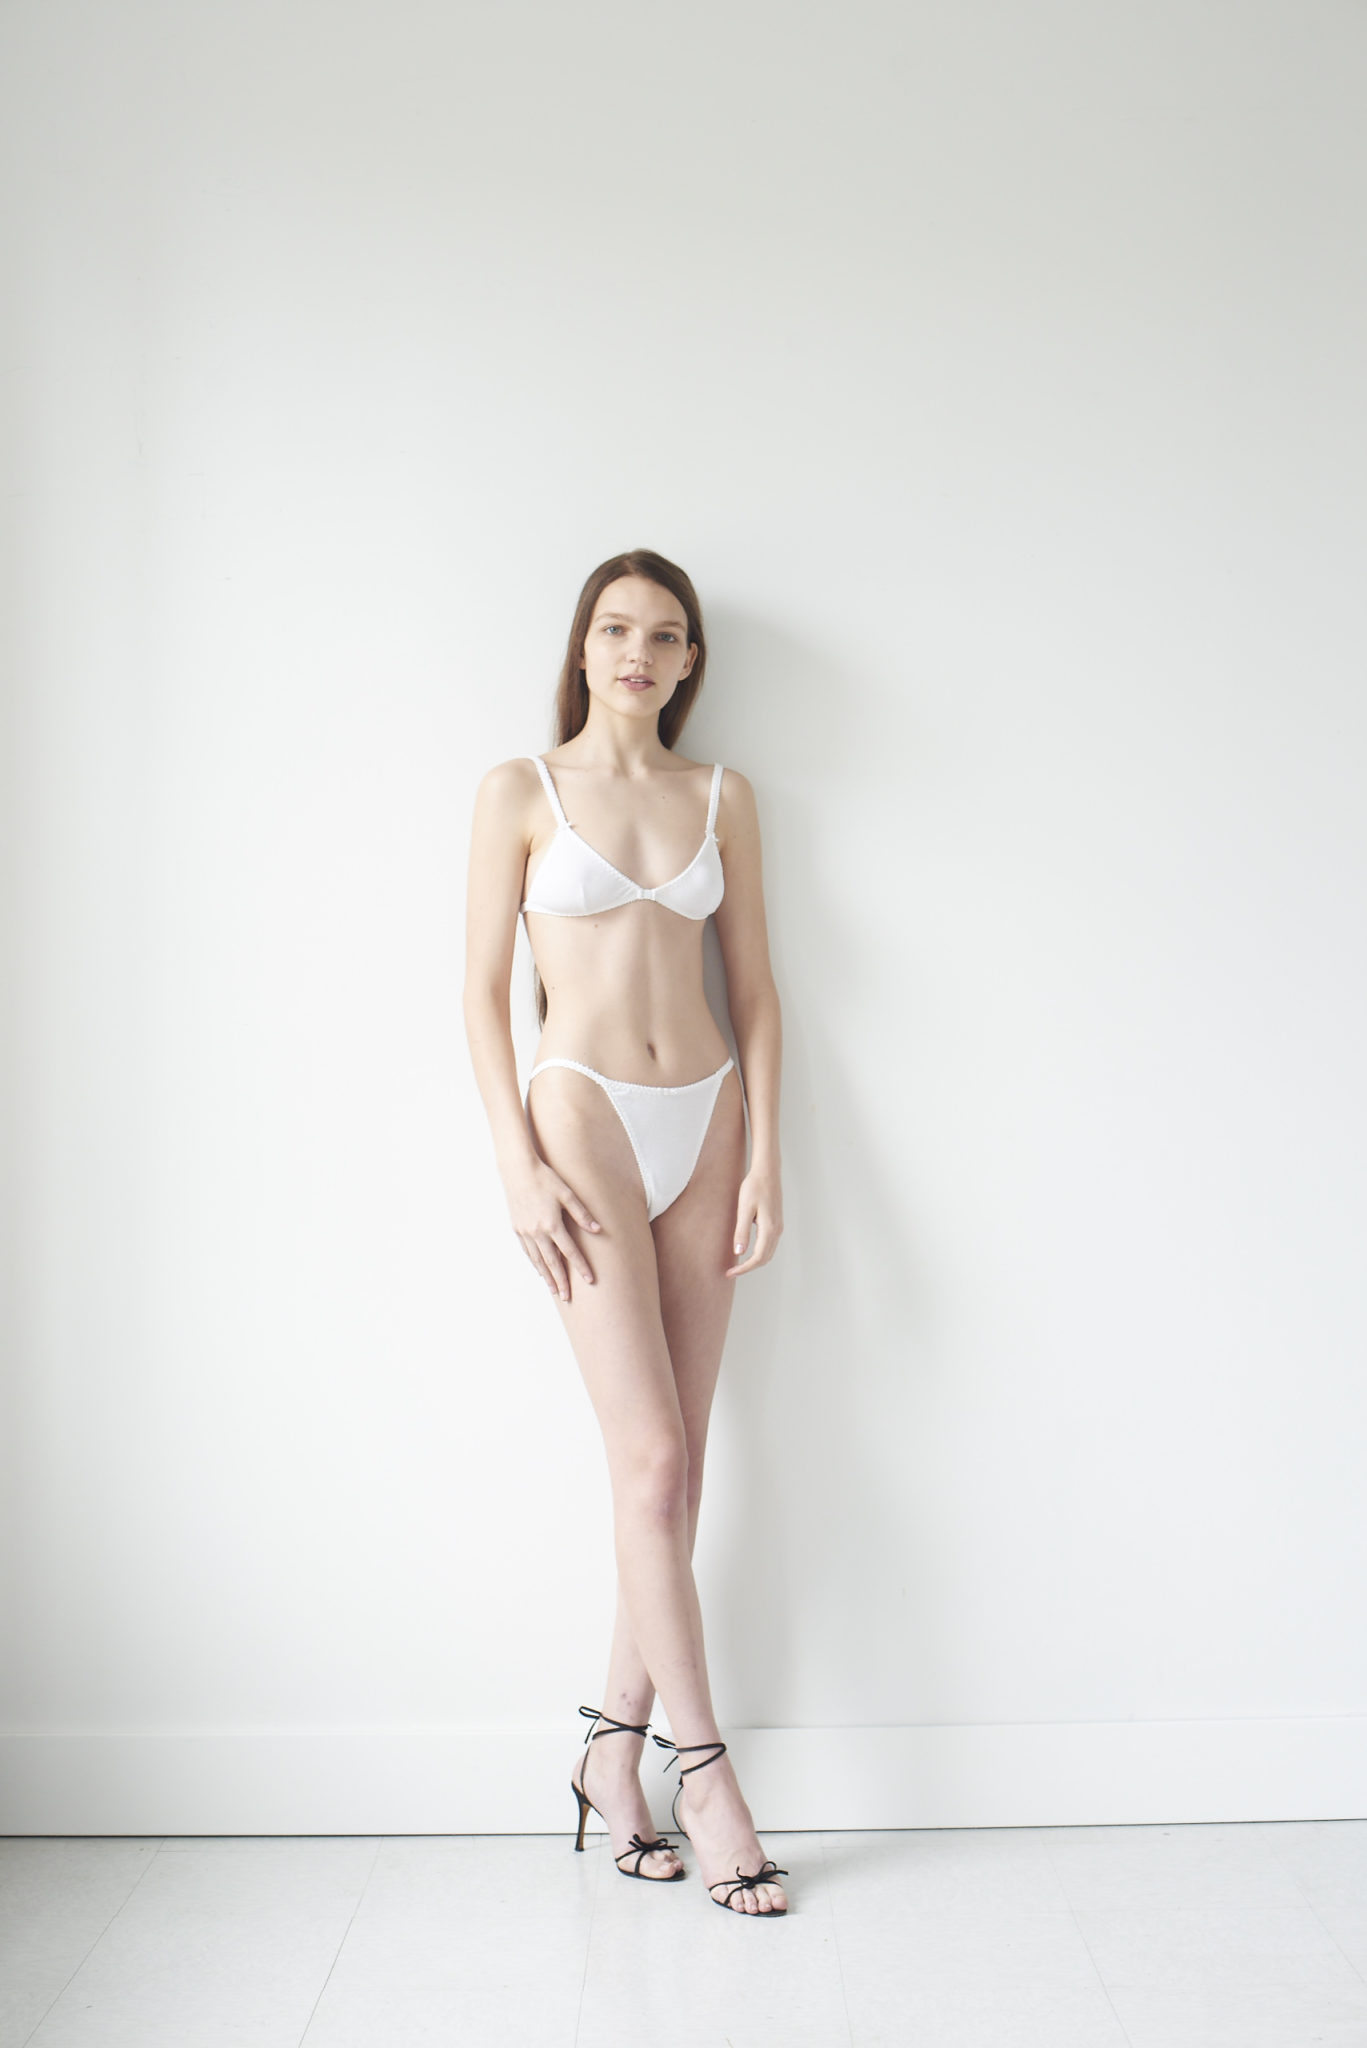 Hello Beautiful: French Cut Panty - White – Azaleas